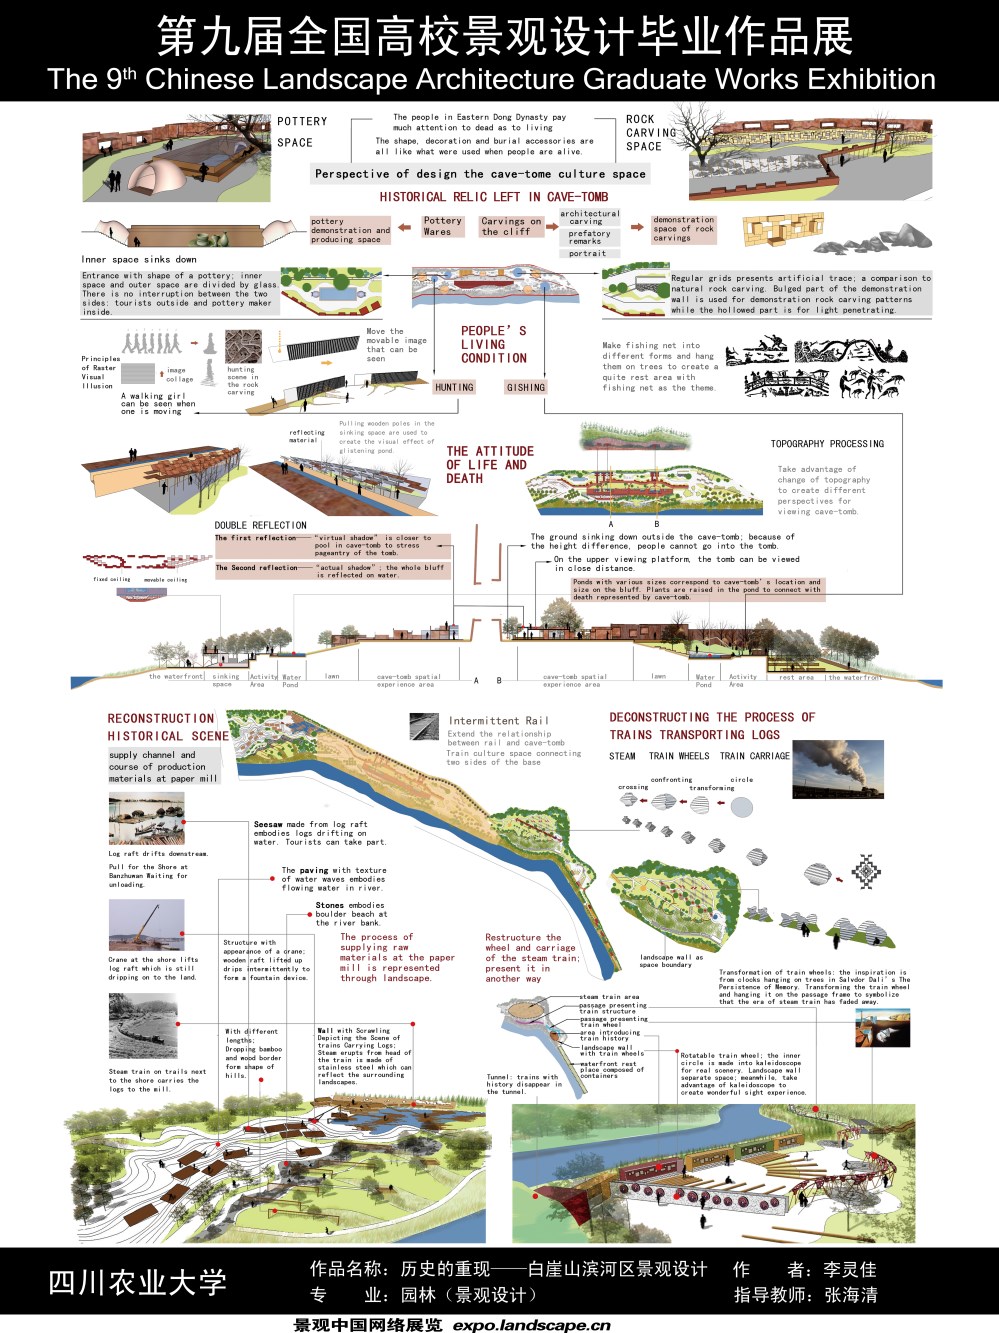 历史的重现——白崖山滨河区景观设计-2